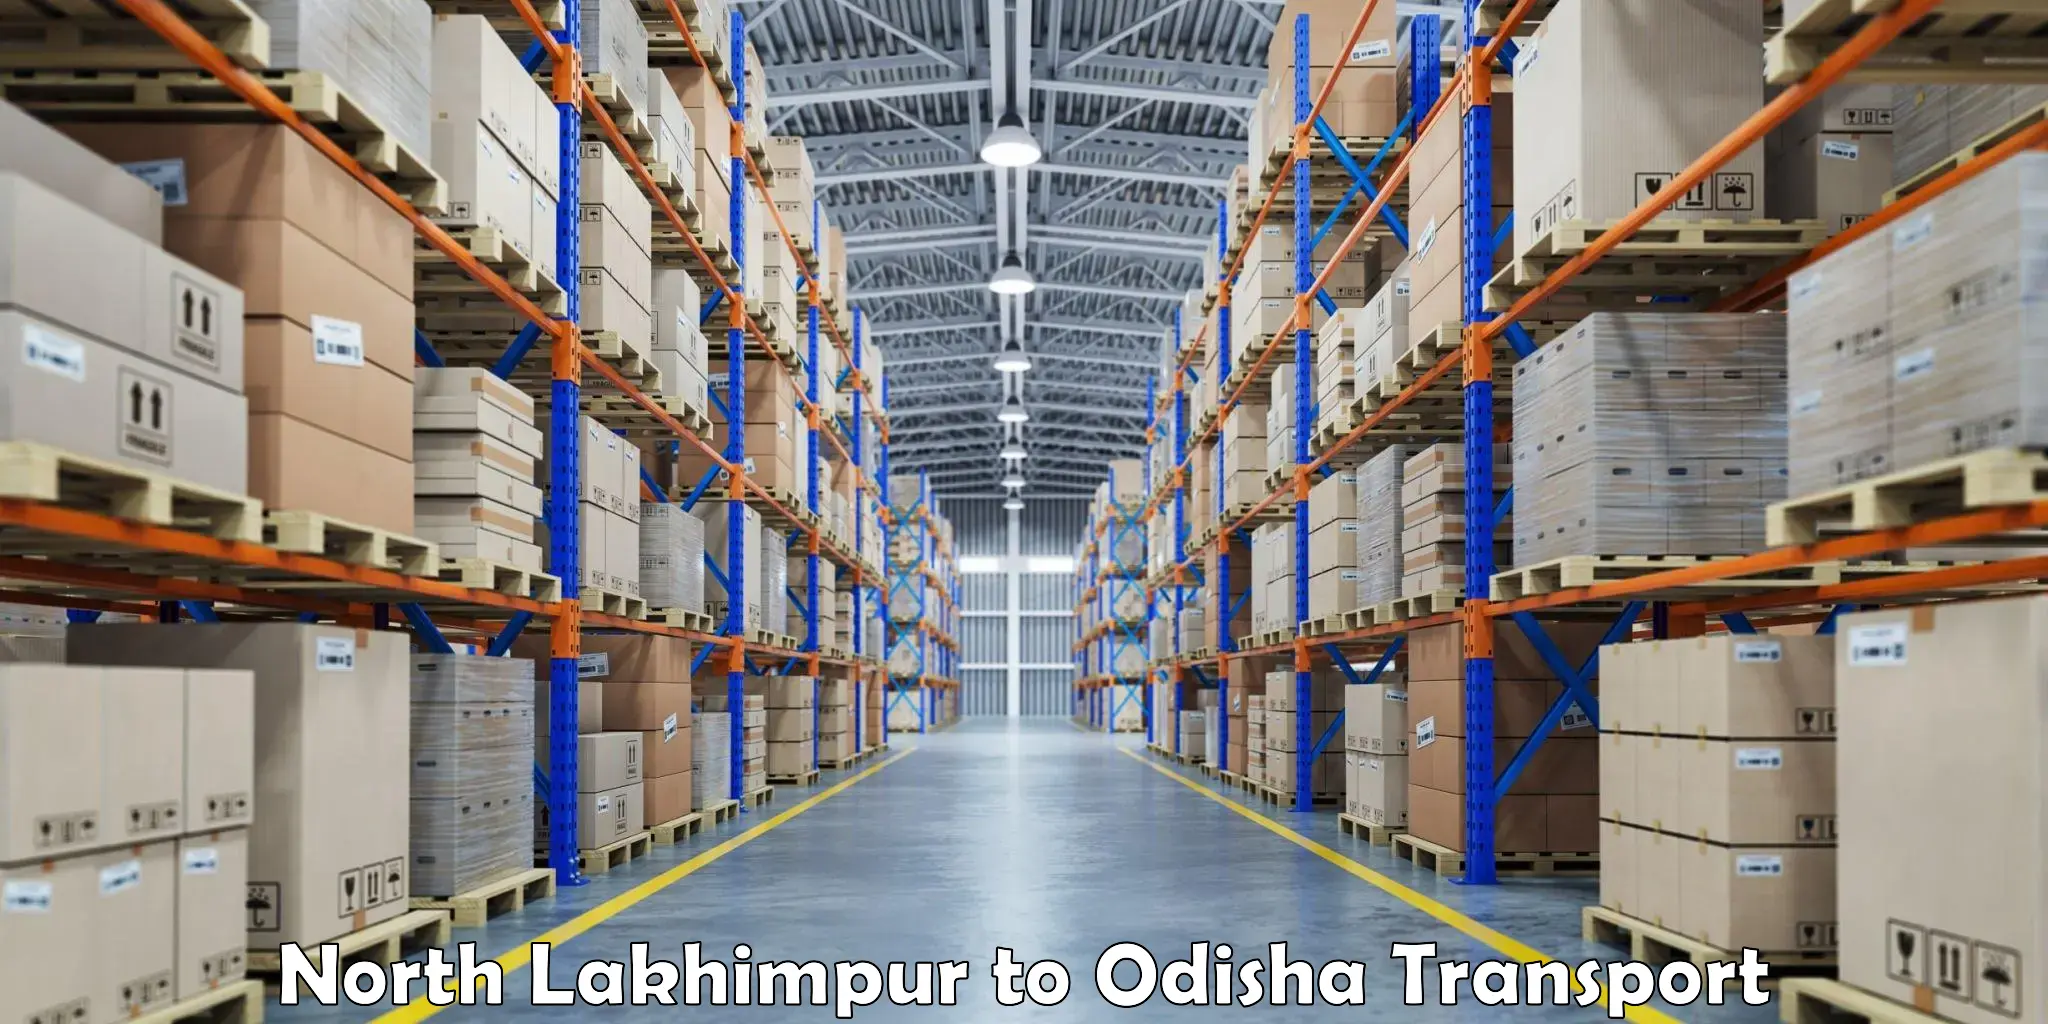 Transport in sharing in North Lakhimpur to Kuchinda